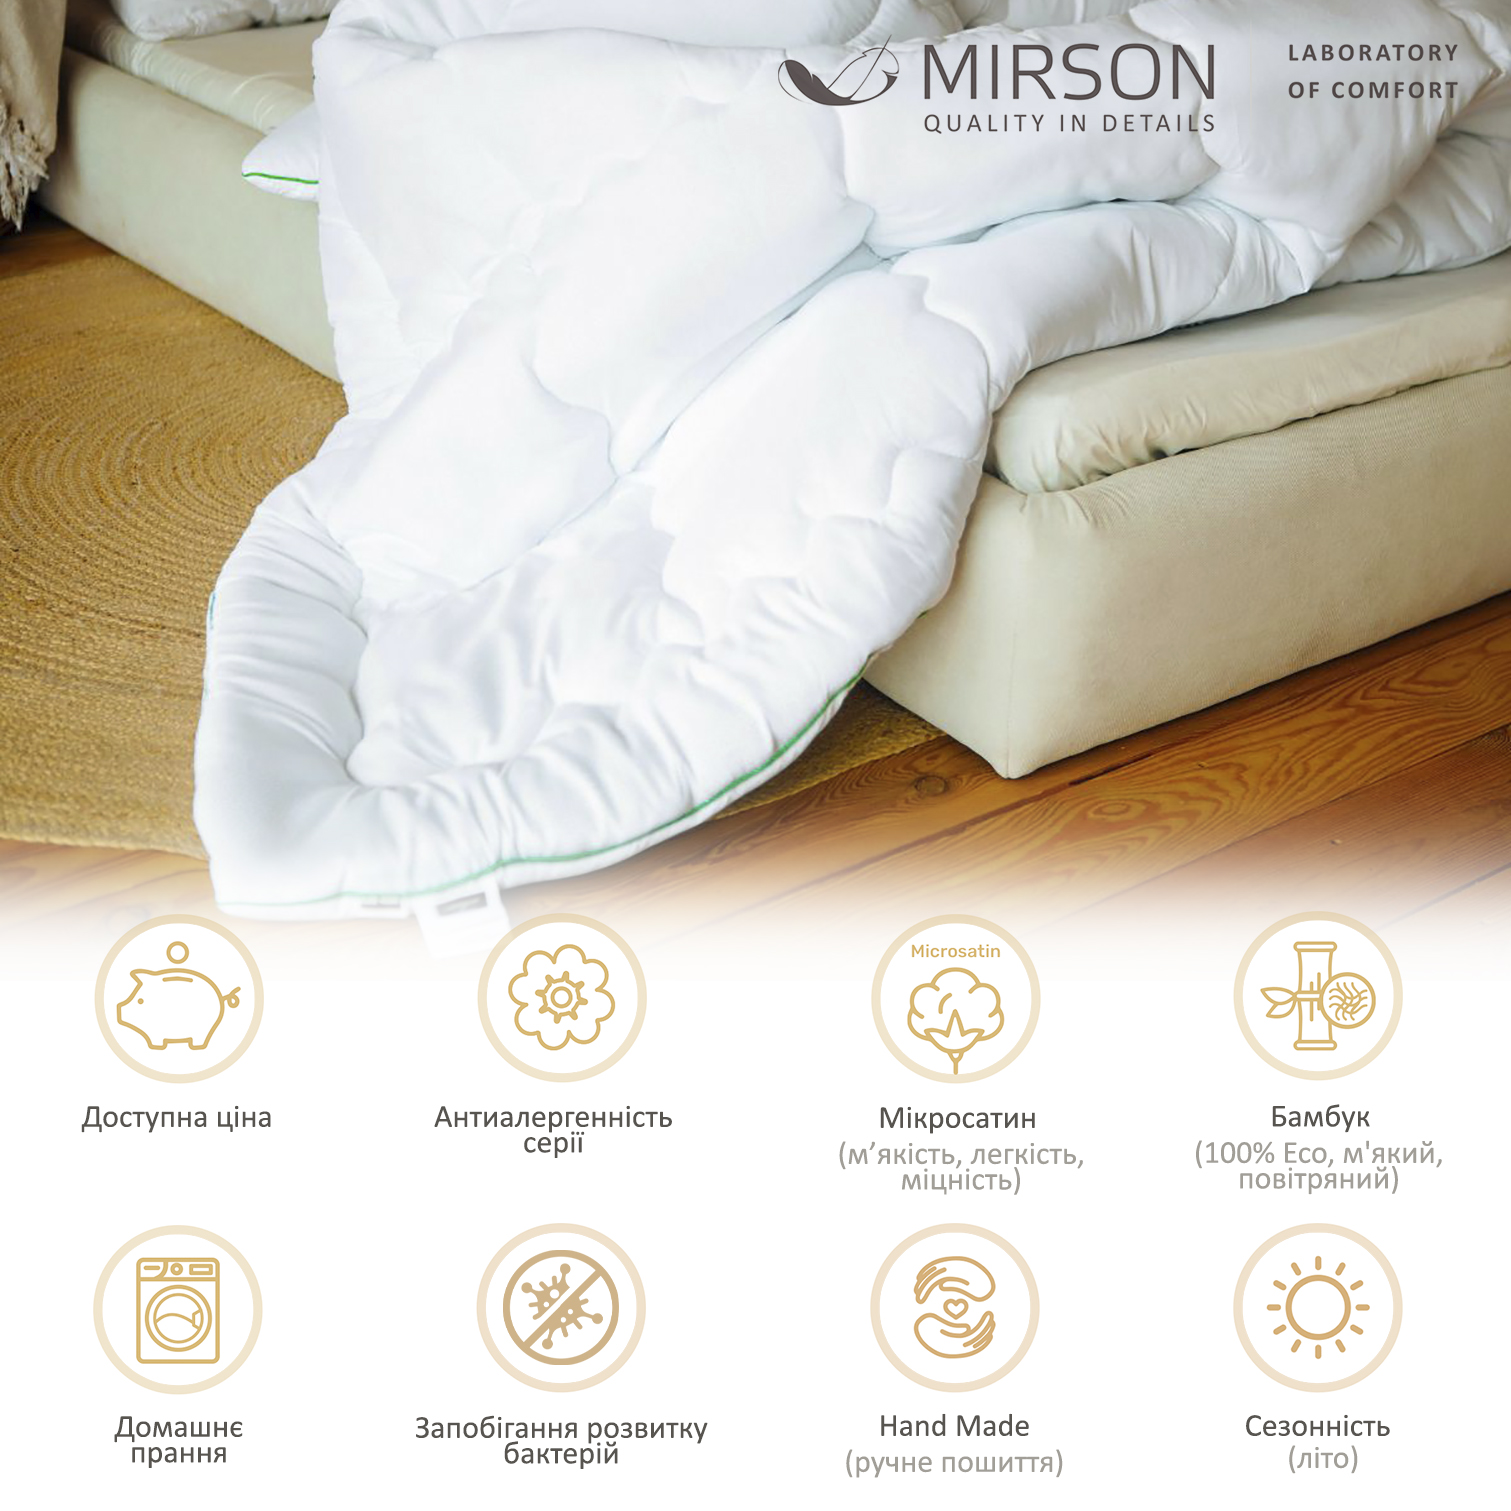 Ковдра бамбукова MirSon Eco Mikrosatin Hand Made №0441, літня, 155x215 см, біла - фото 6